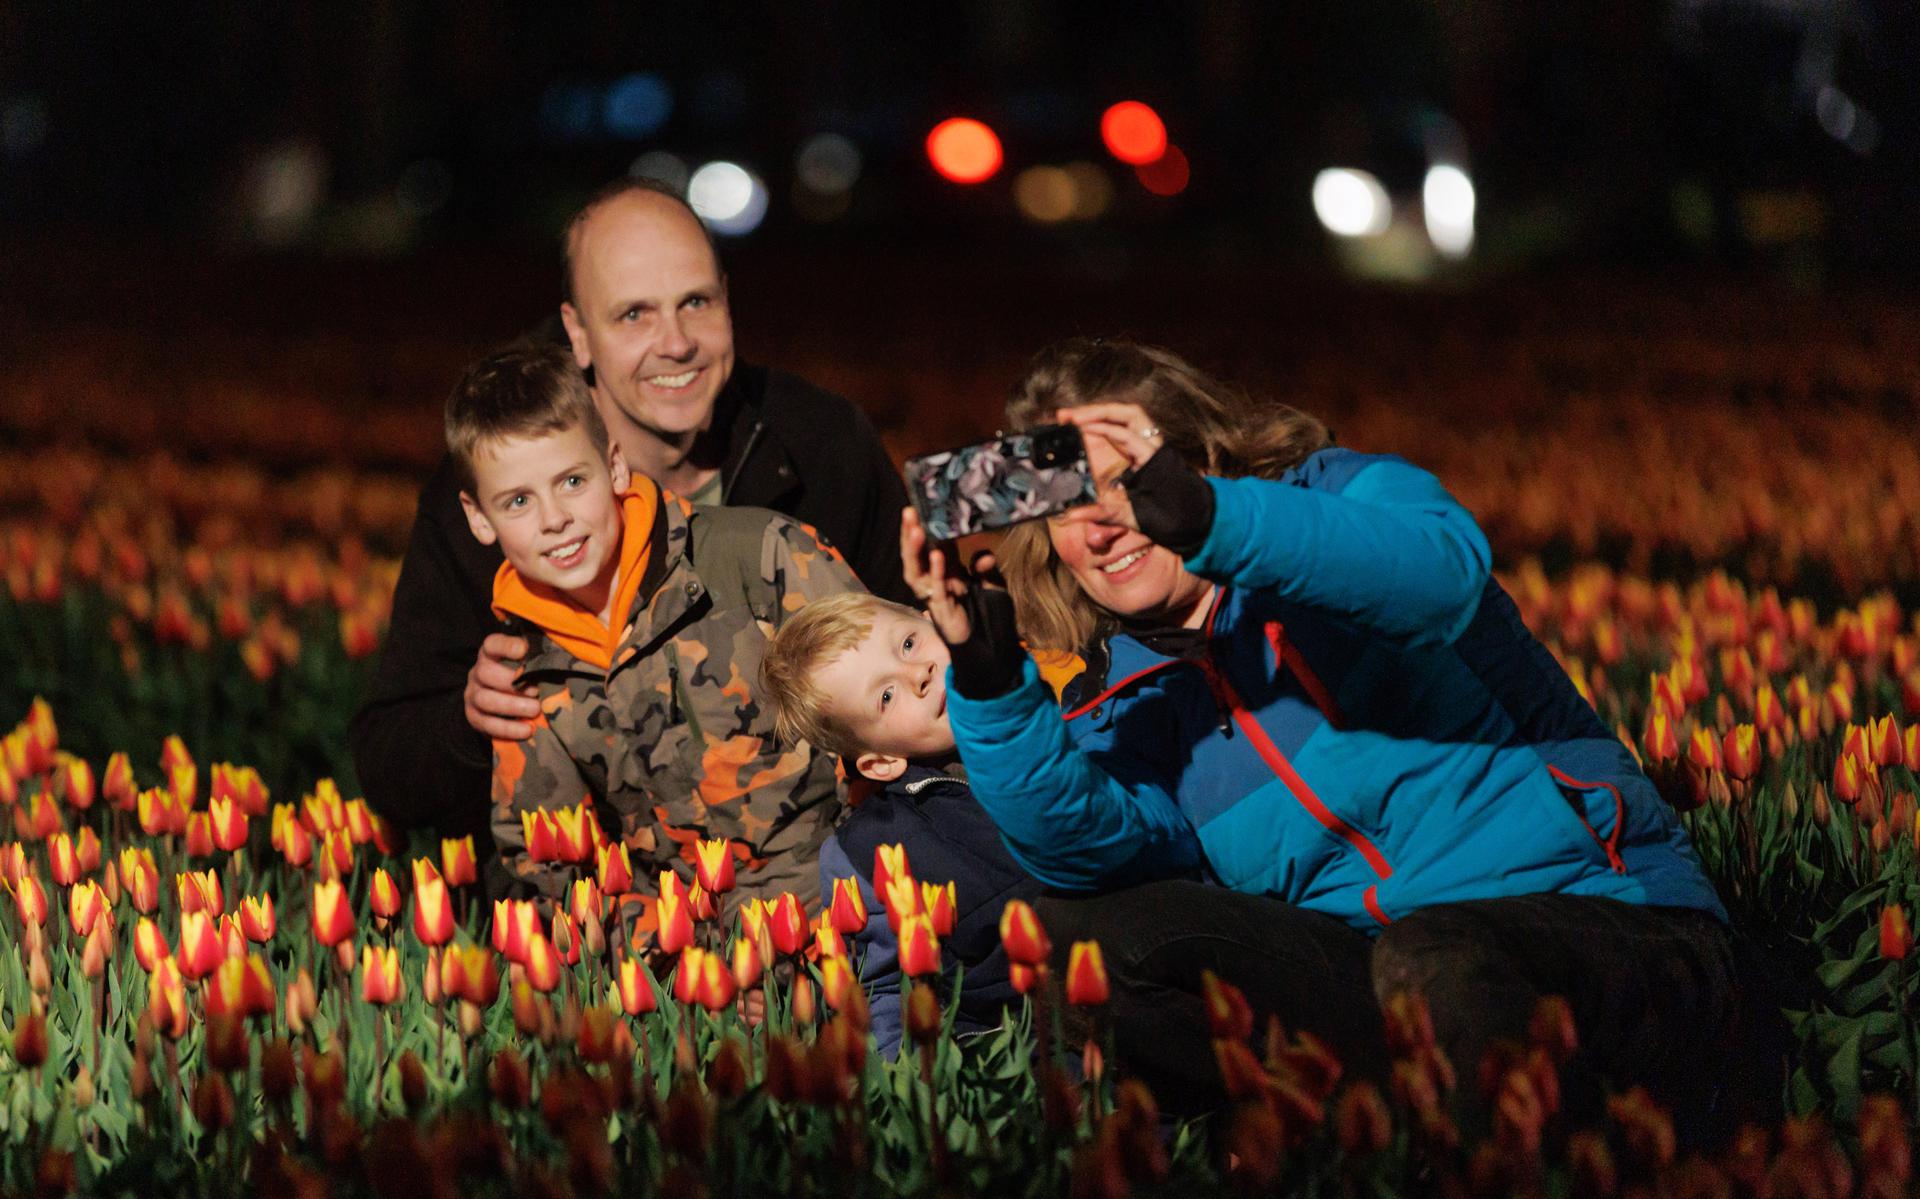 De familie Eising uit Hooghalen is zo druk met het maken van mooie familiefoto's dat ze de andere fotograaf niet opmerken. 